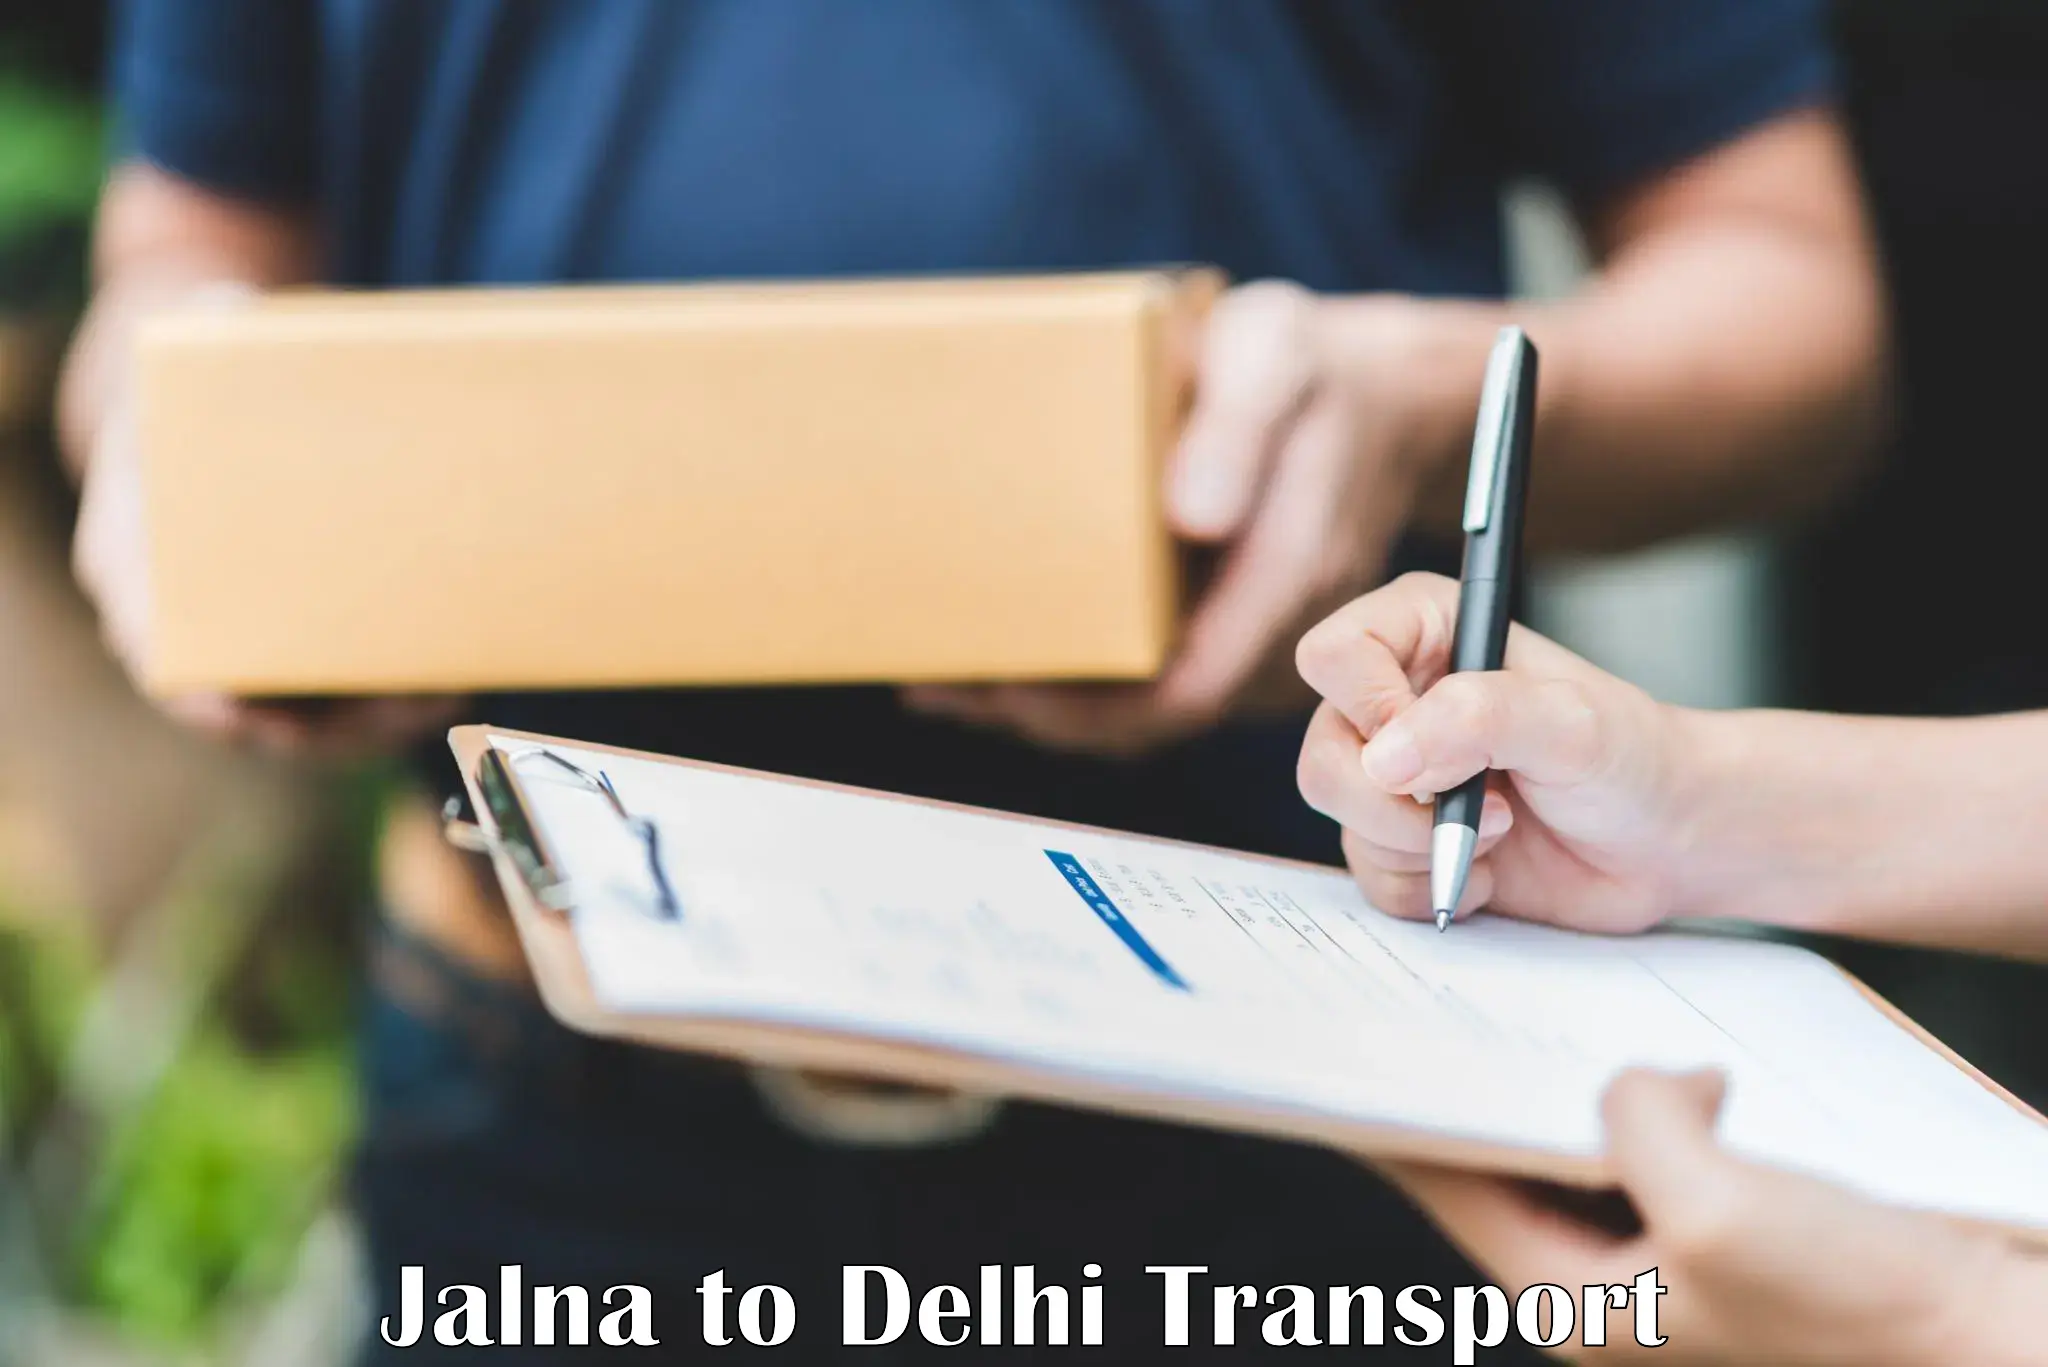 Commercial transport service Jalna to NIT Delhi